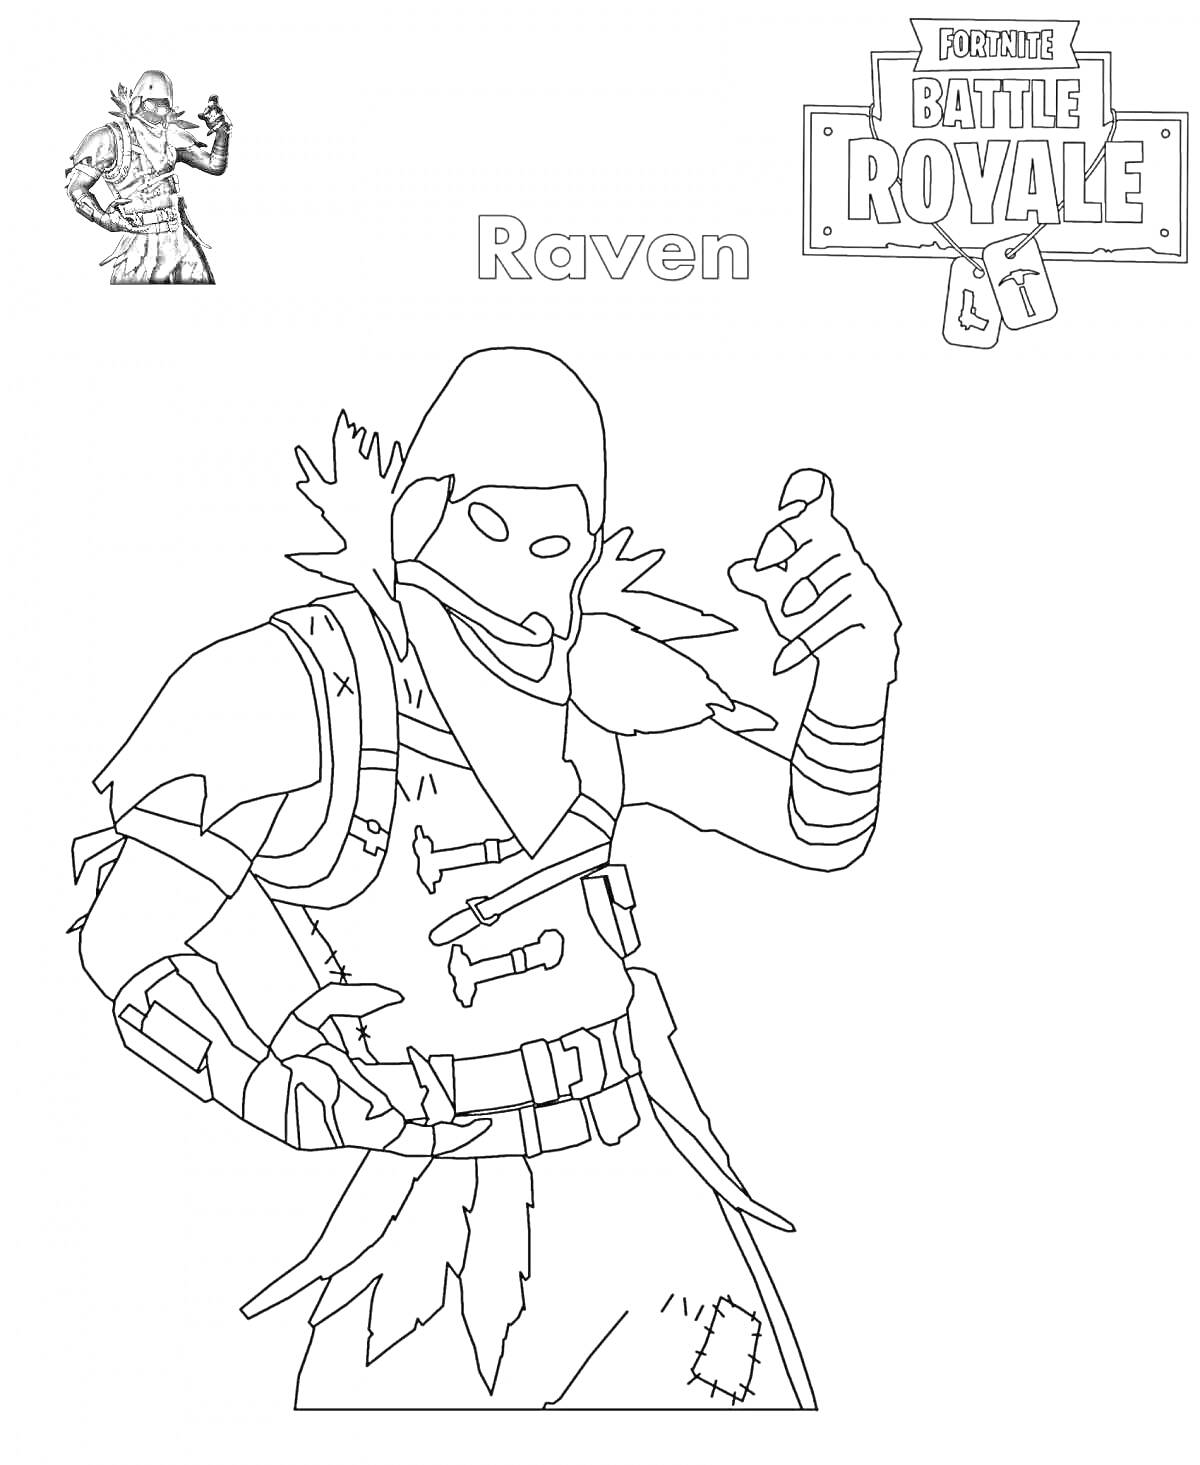 Раскраска персонажа Raven из Fortnite Battle Royale, с изображением бойца с капюшоном, бронёй и наплечниками, в позе с поднятой рукой.